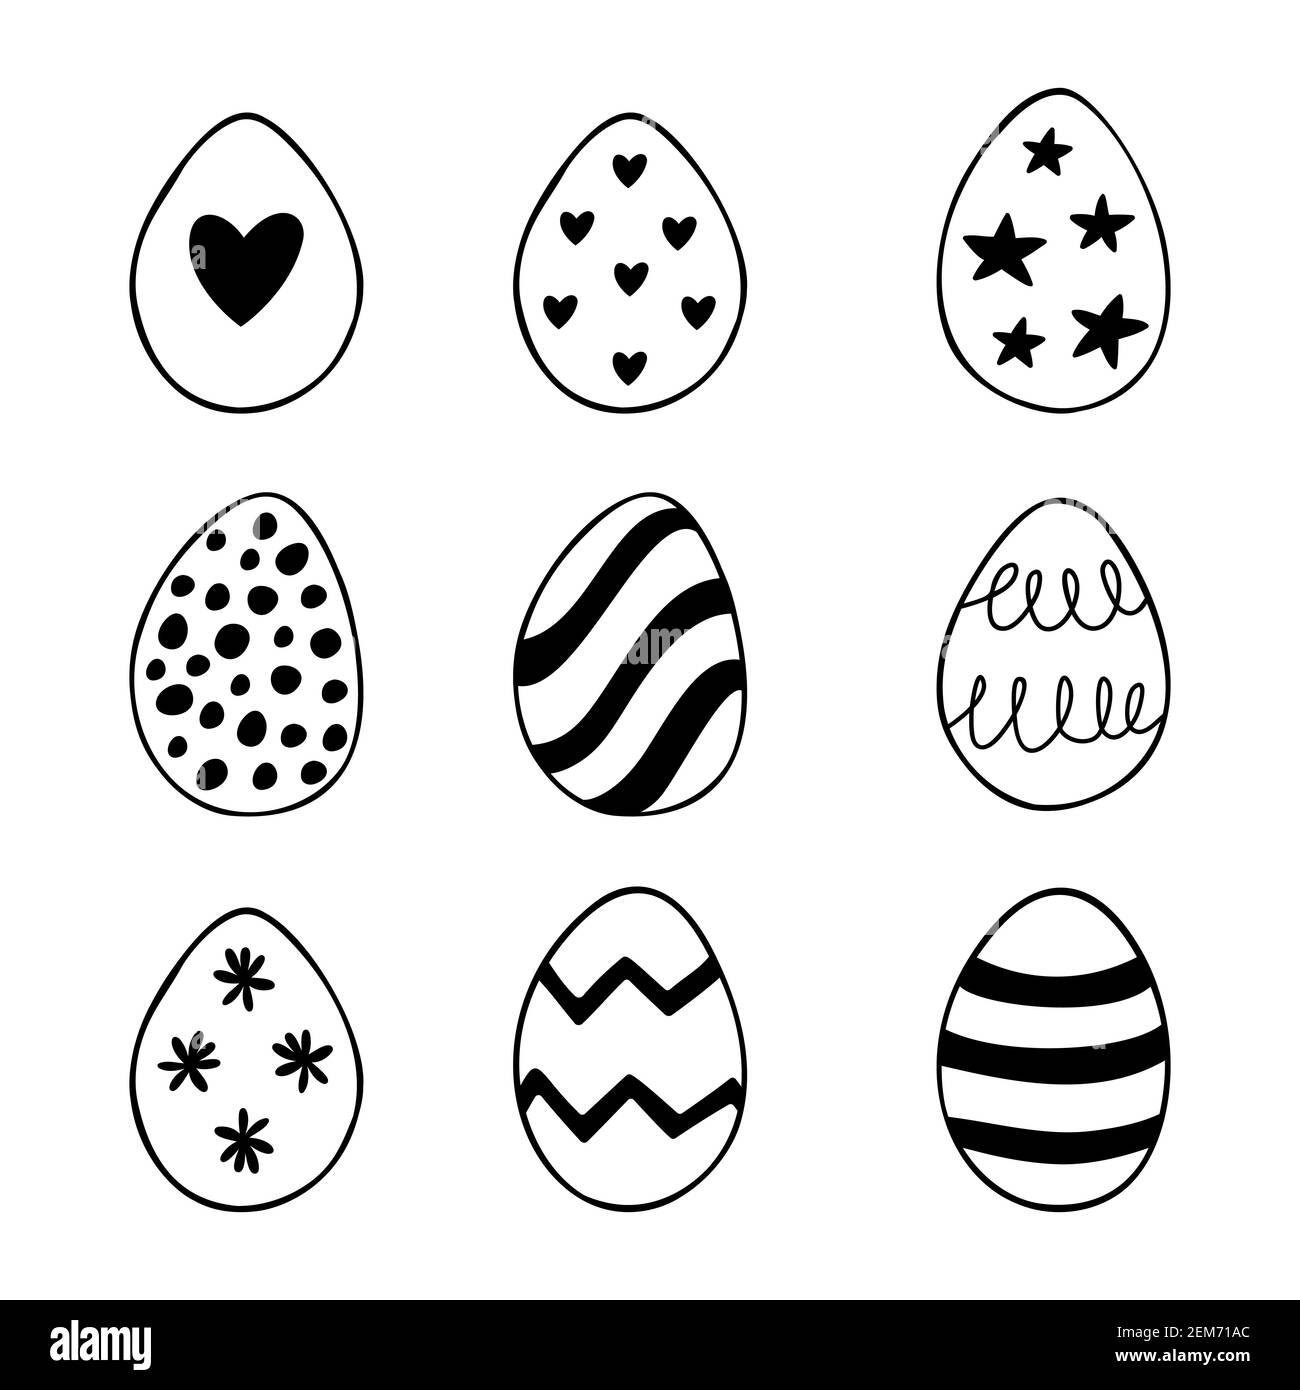 Ostern Set von Doodle Eier Illustrationen isoliert auf einem weißen Hintergrund. Stock Vektor